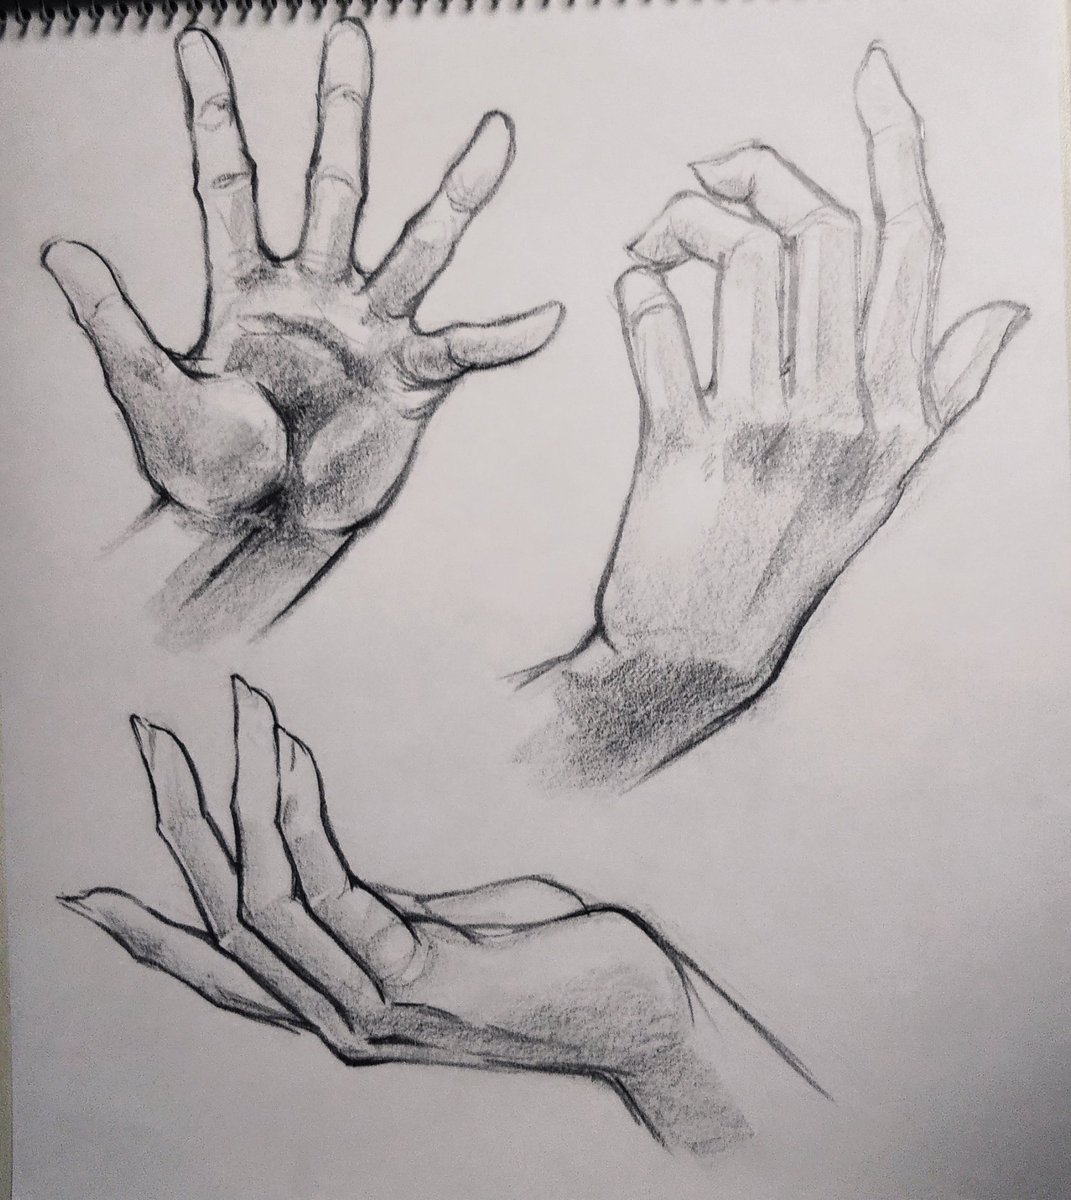 手を描き描き練習。
手は楽しい。

#落書き #練習 #drawing 